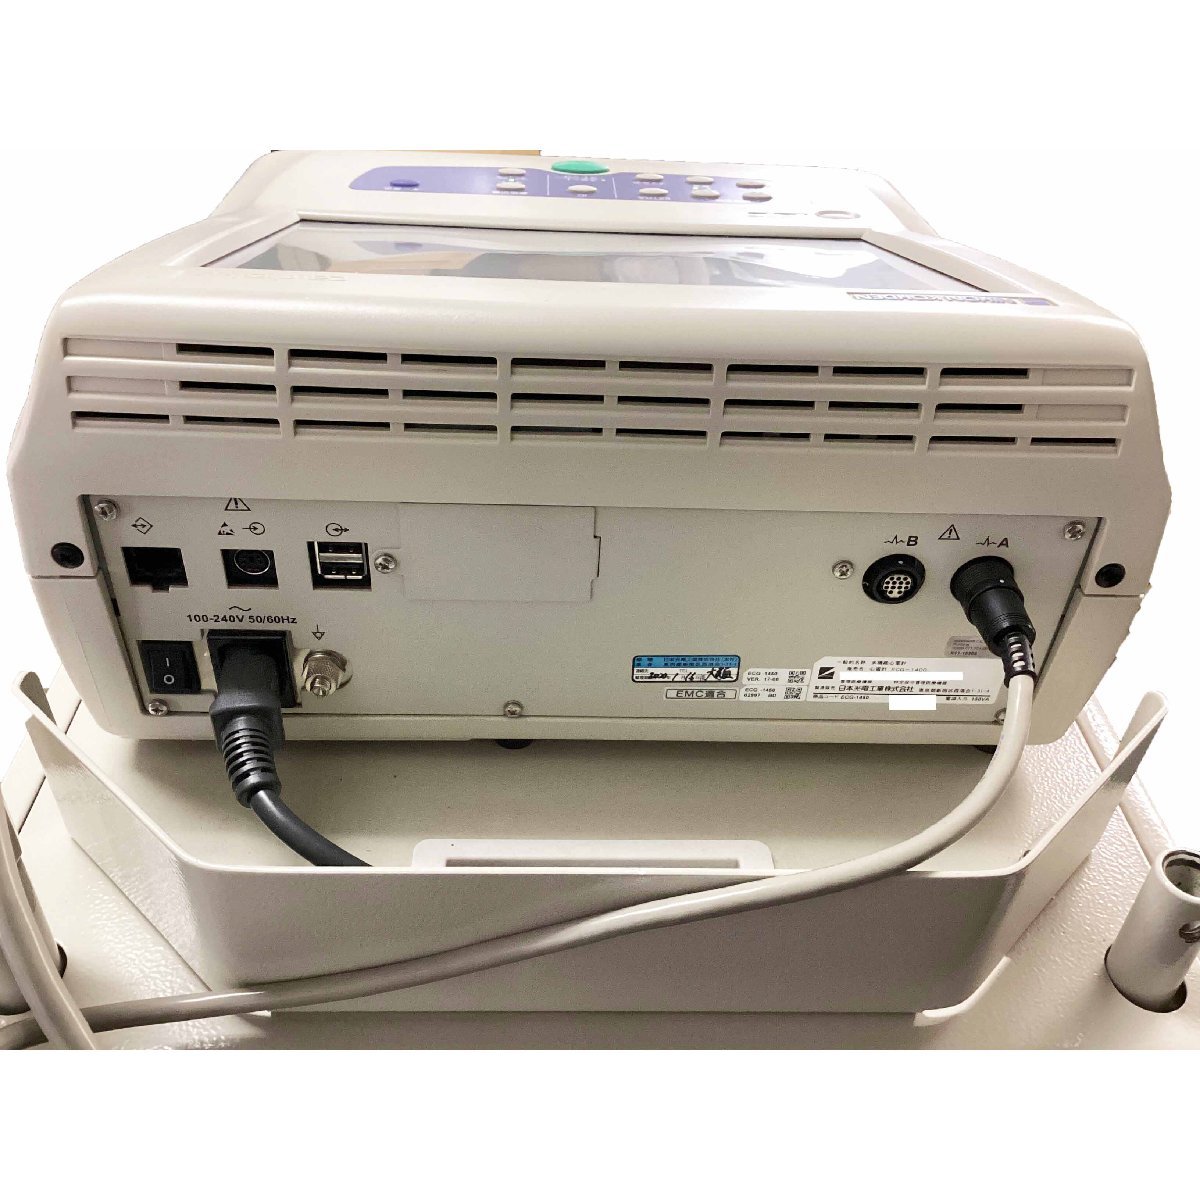  прямой самовывоз /JITBOX ограничение Япония свет электрик индустрия сердце электро- итого ECG-1450 многофункциональный сердце электро- итого инструкция есть управление медицинская помощь оборудование больница инспекция измерительный прибор сердце .NIHON KOHDEN w763